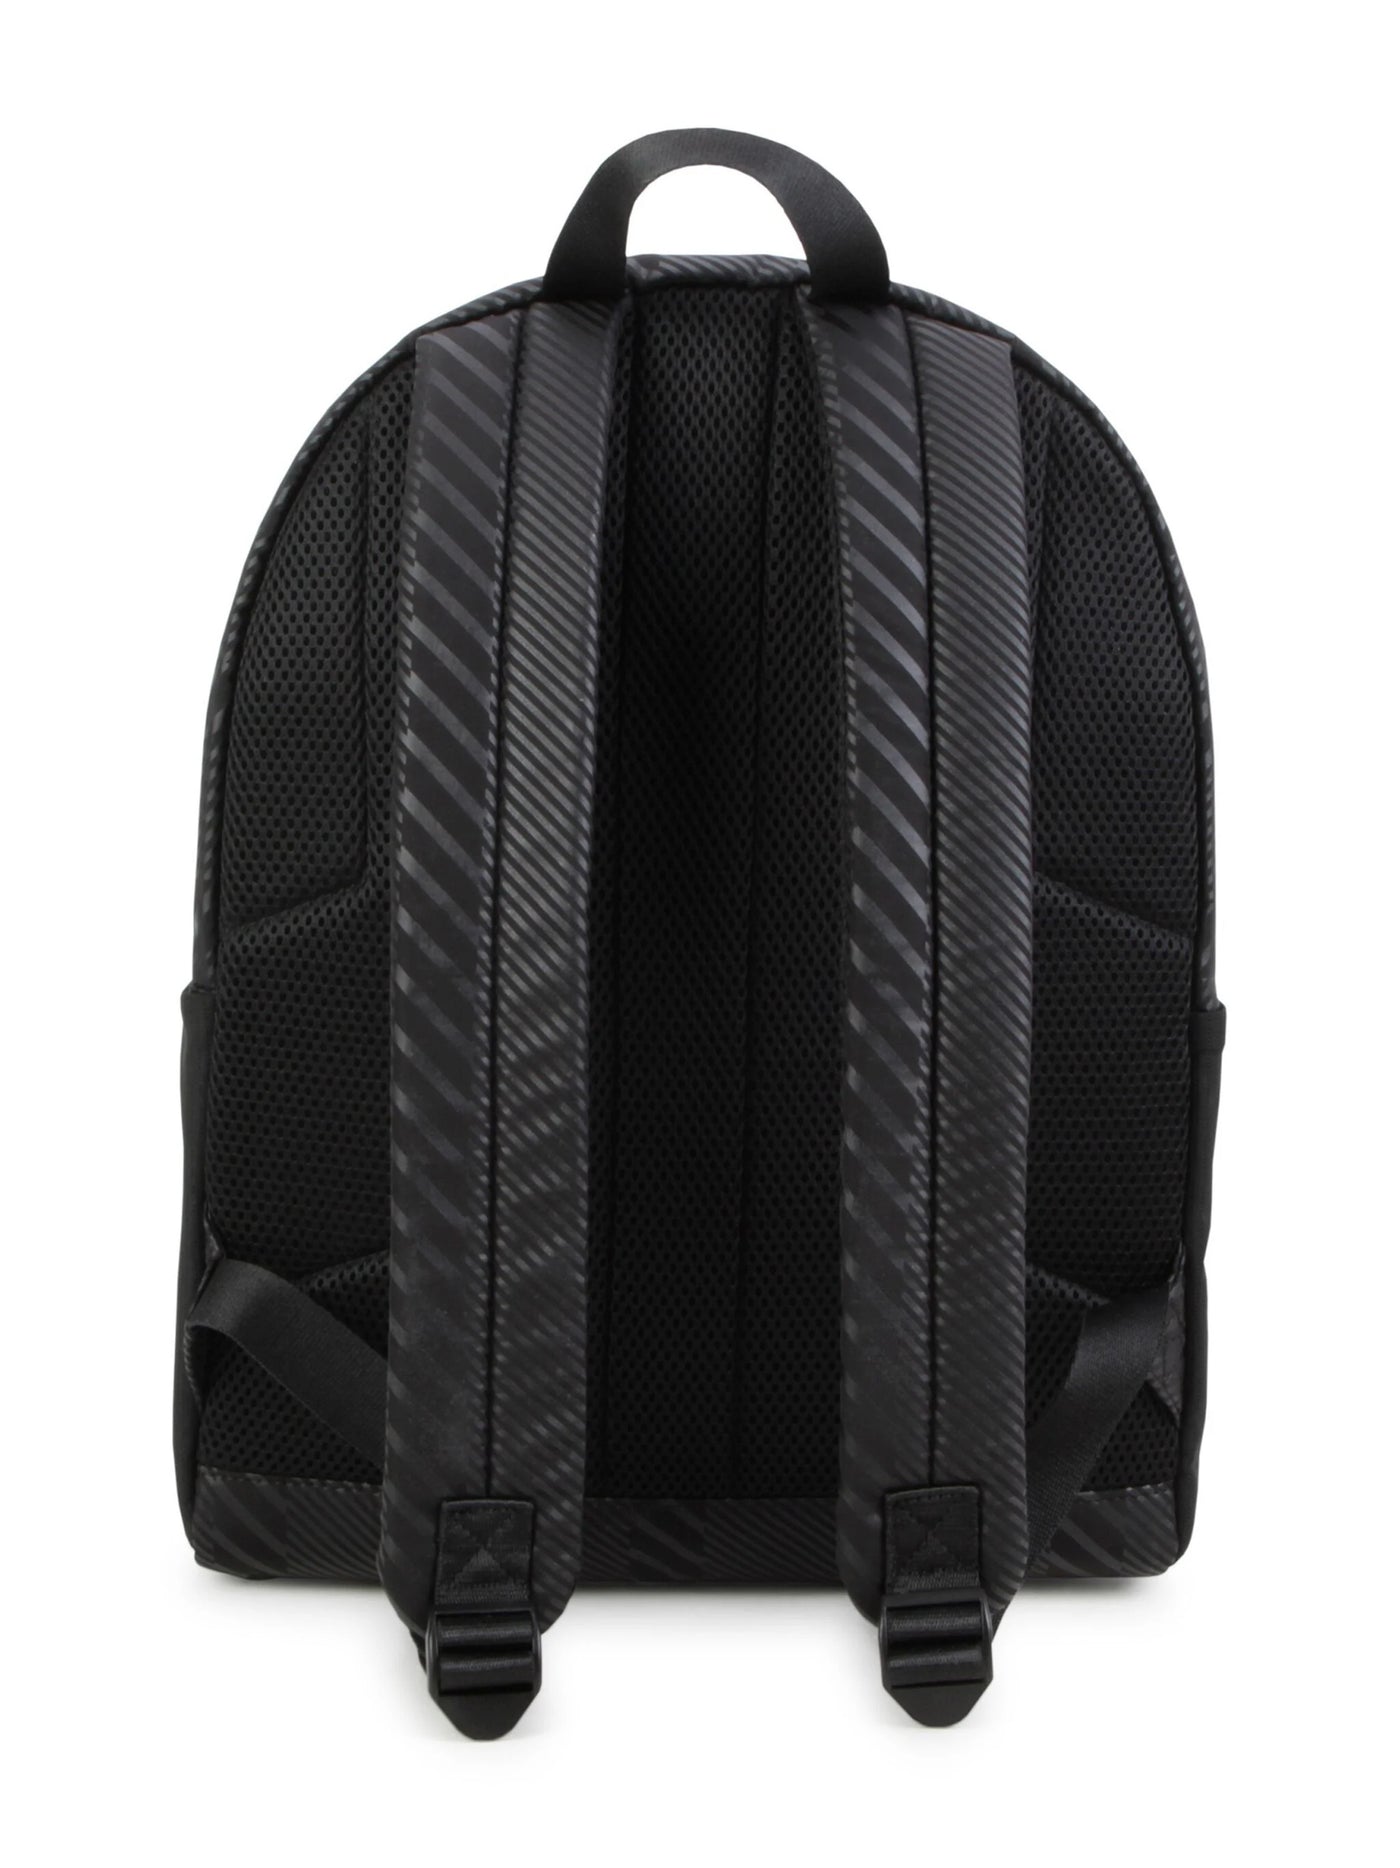 BOSS Kidswear logo-appliqué striped backpack